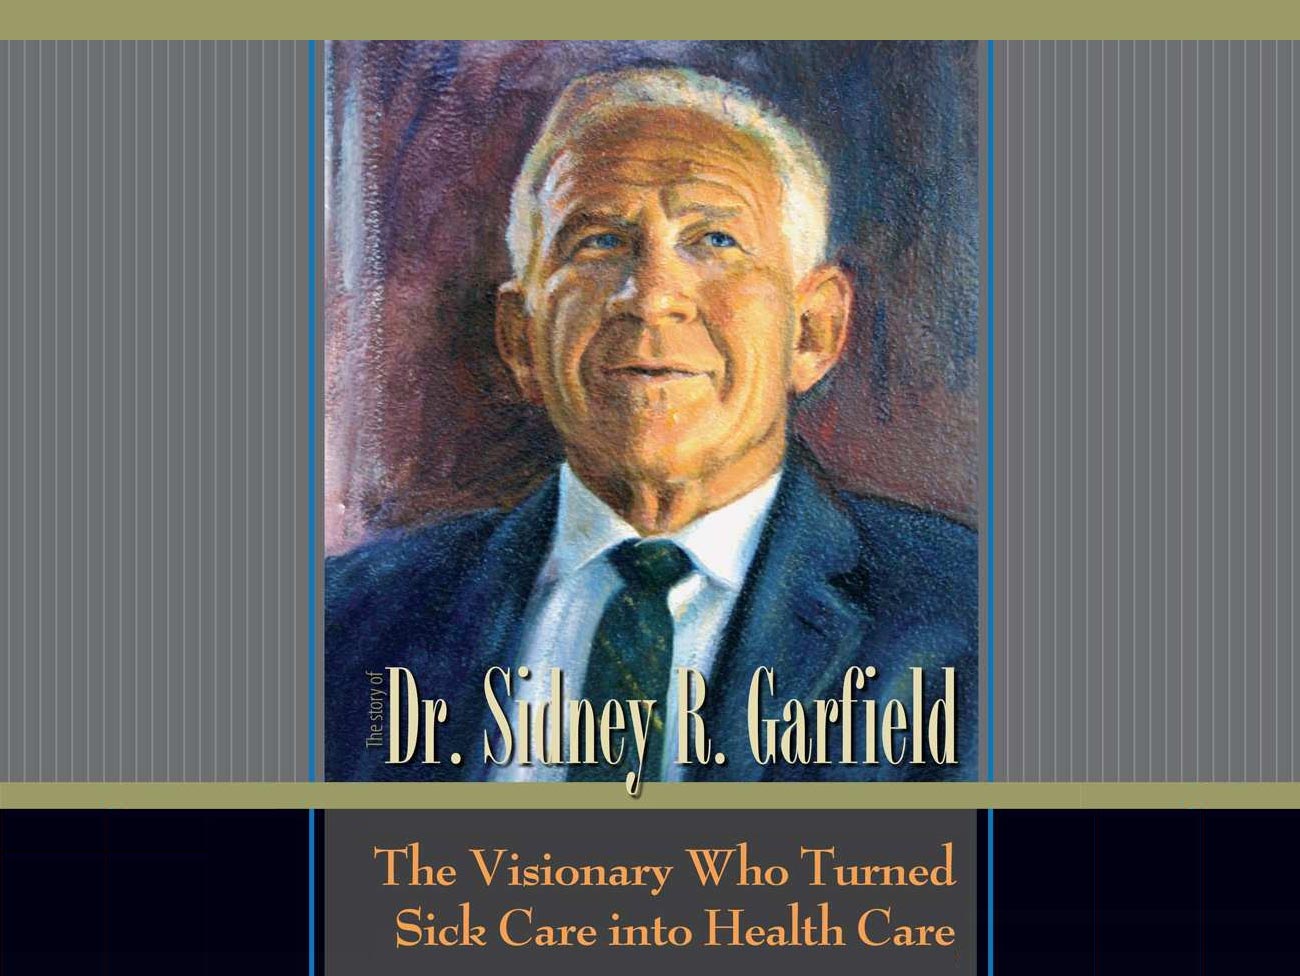 封面:《加菲猫医生的故事》(The Story of Dr. Sidney R. Garfield - The Visionary Who Turned Sick Care into Health Care)，配以加菲猫医生的彩色插图。